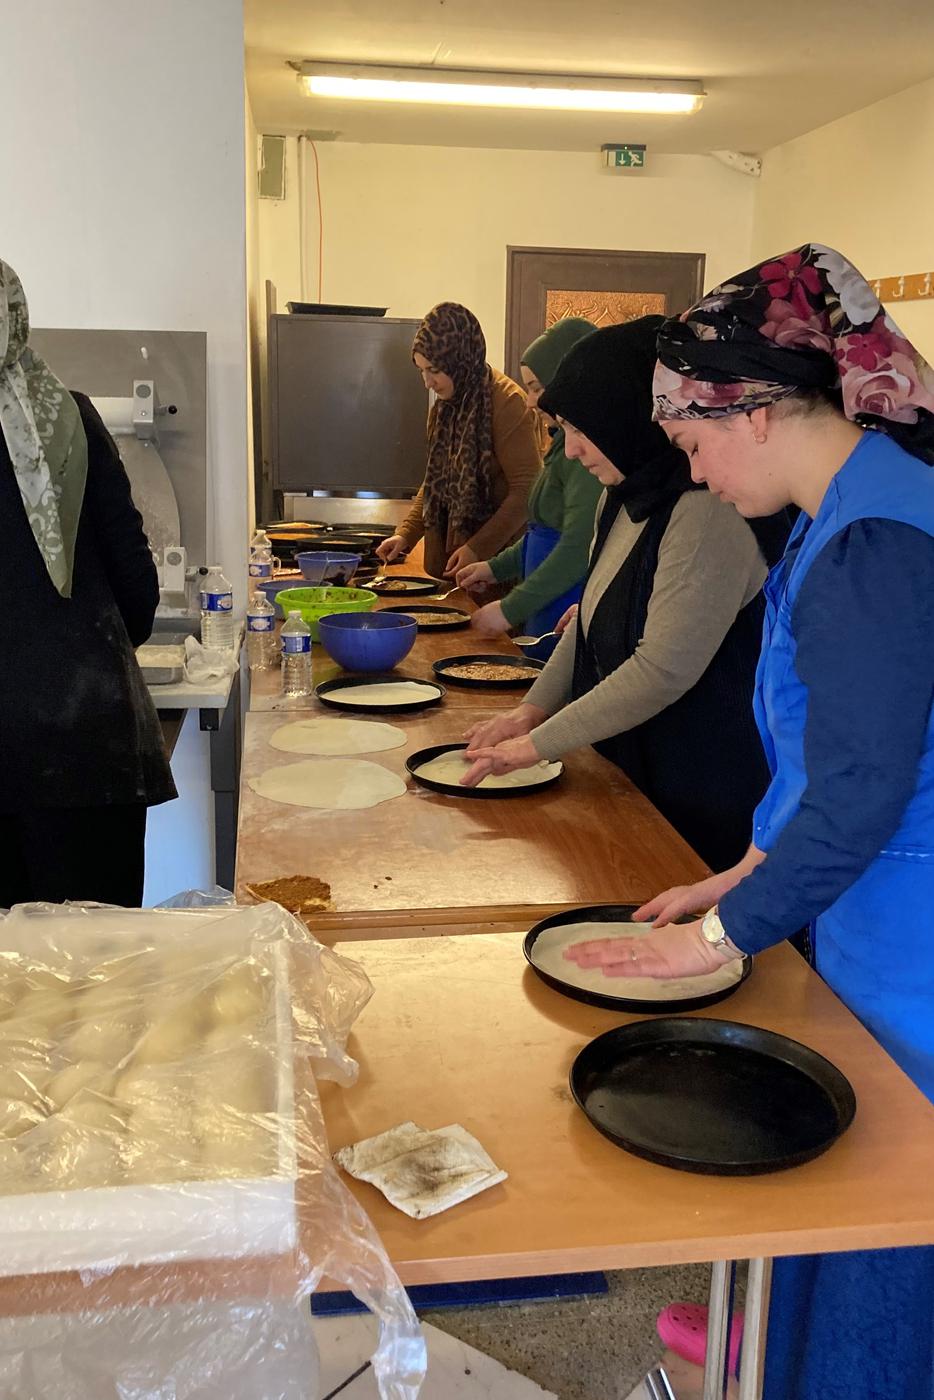 Frauen kochen in der Ditib Moschee in Rastatt.